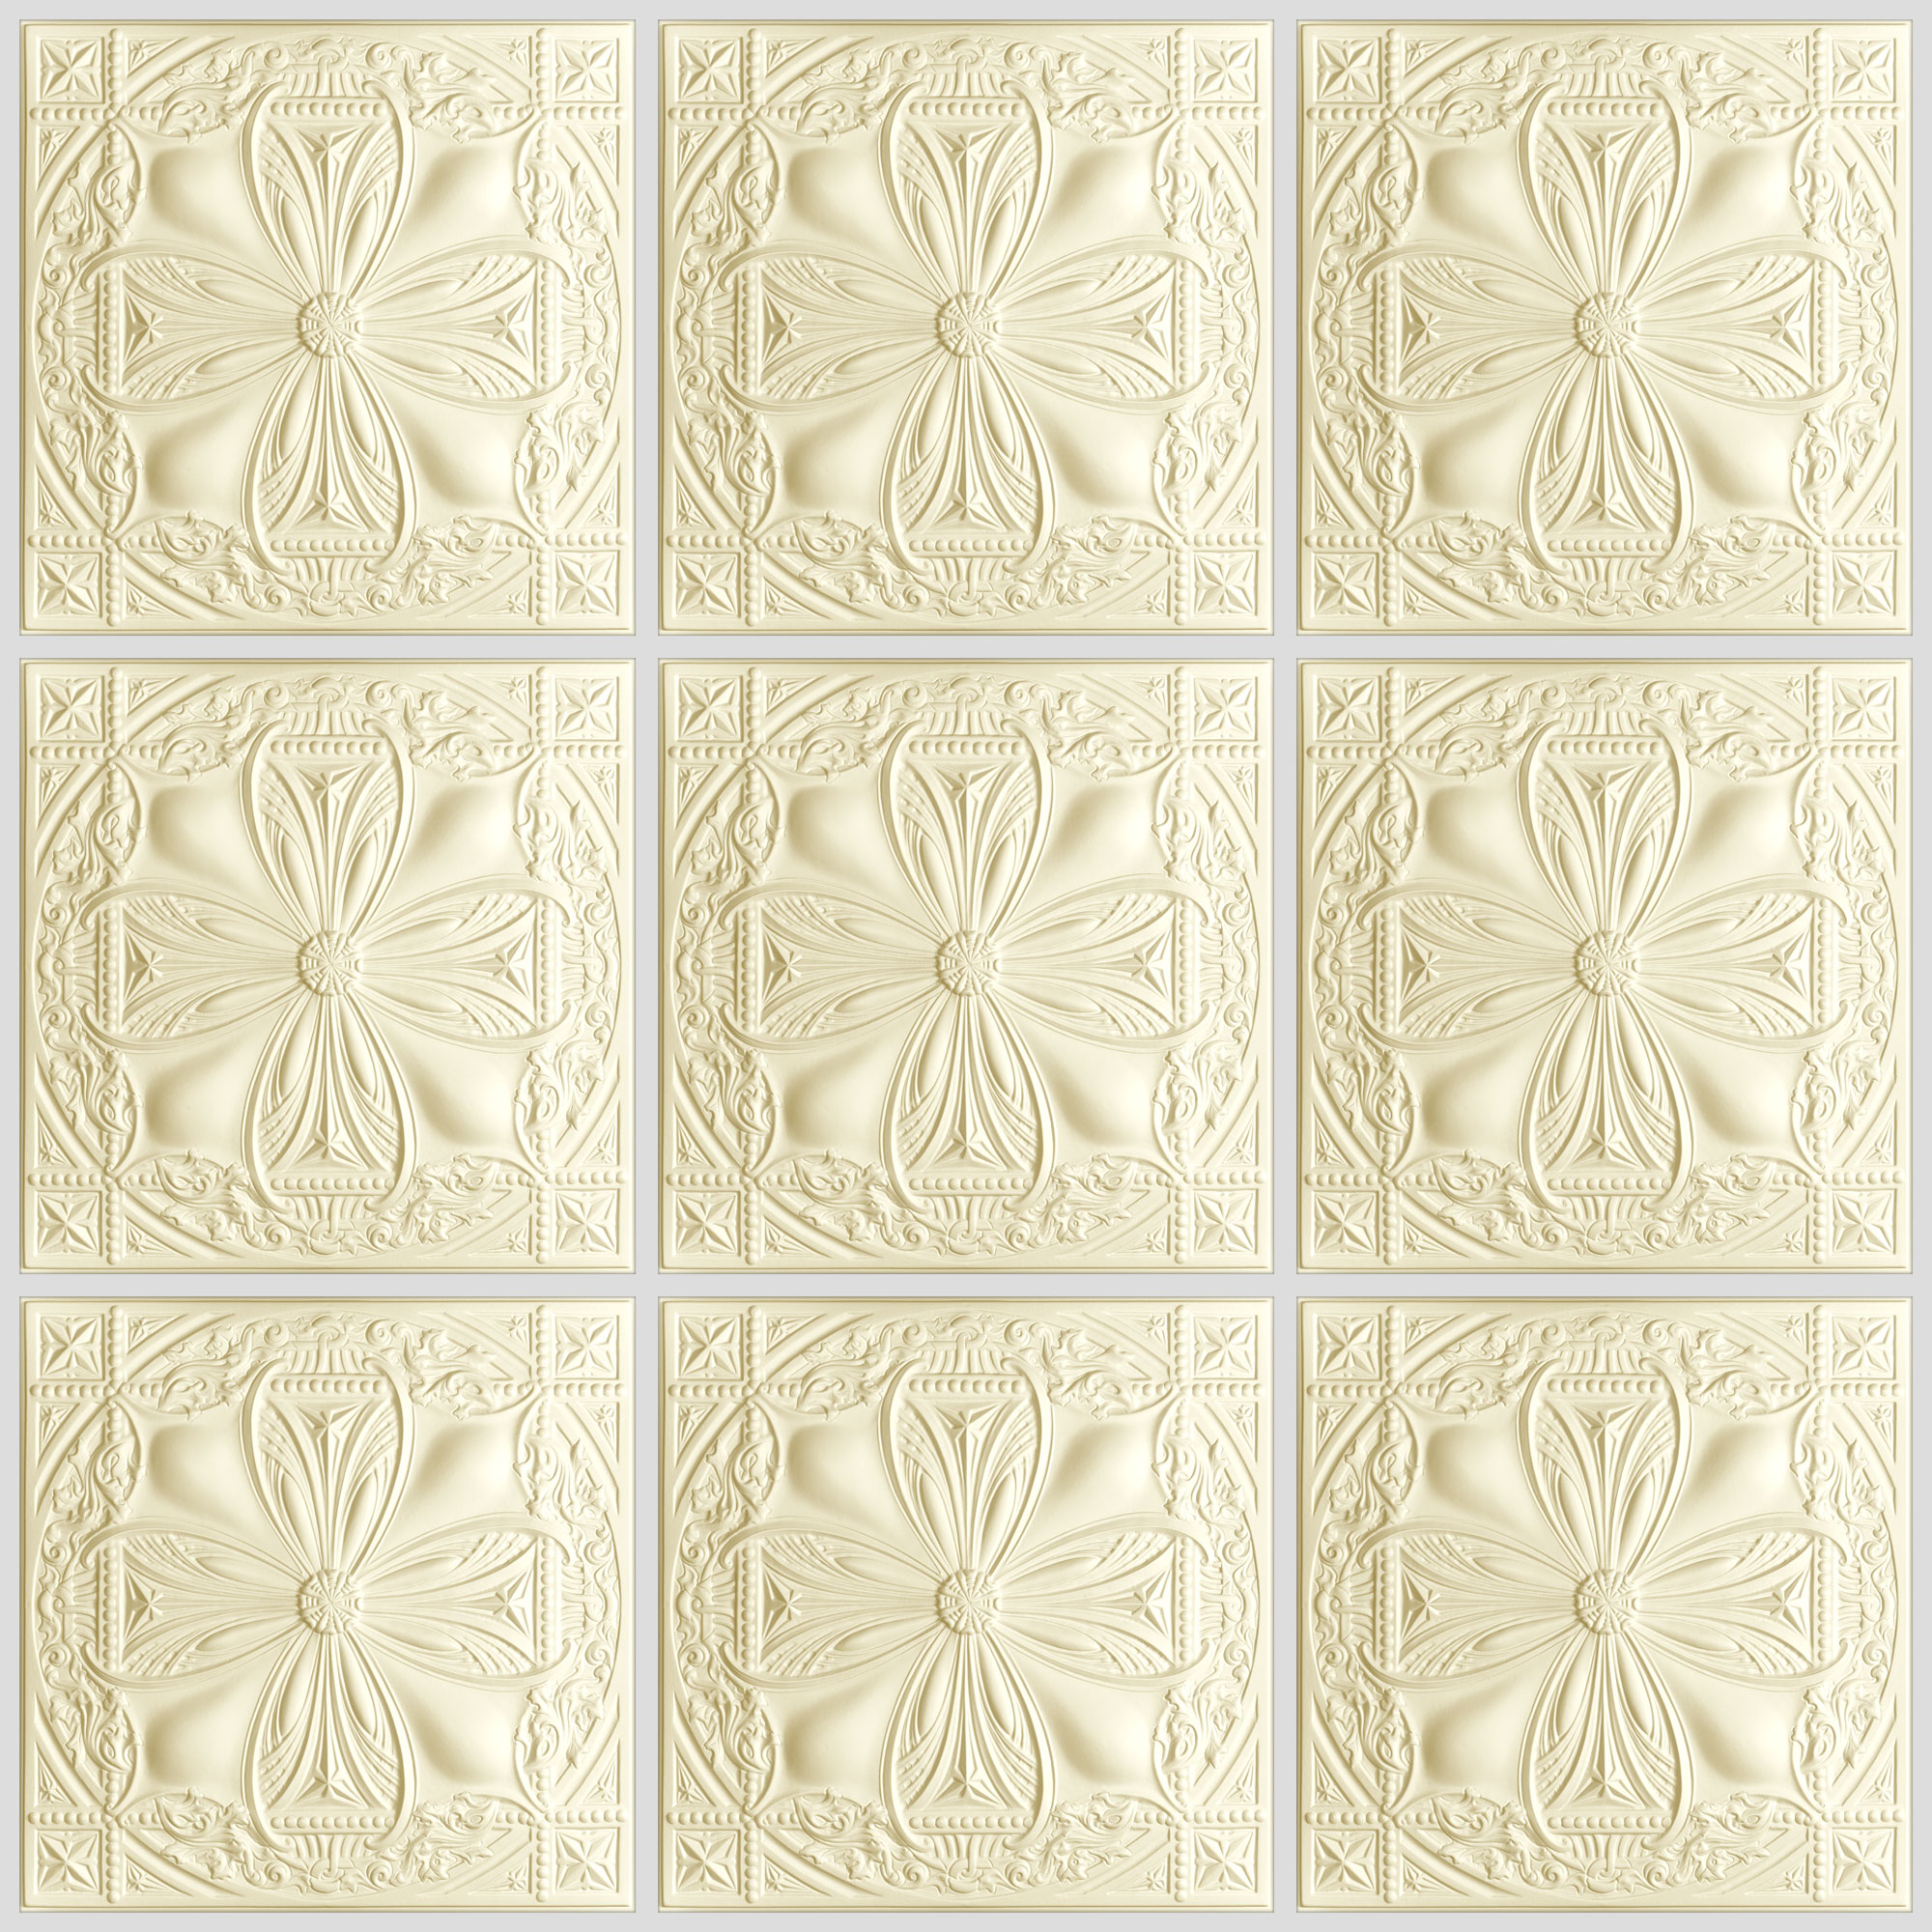 Avalon Ceiling Tiles